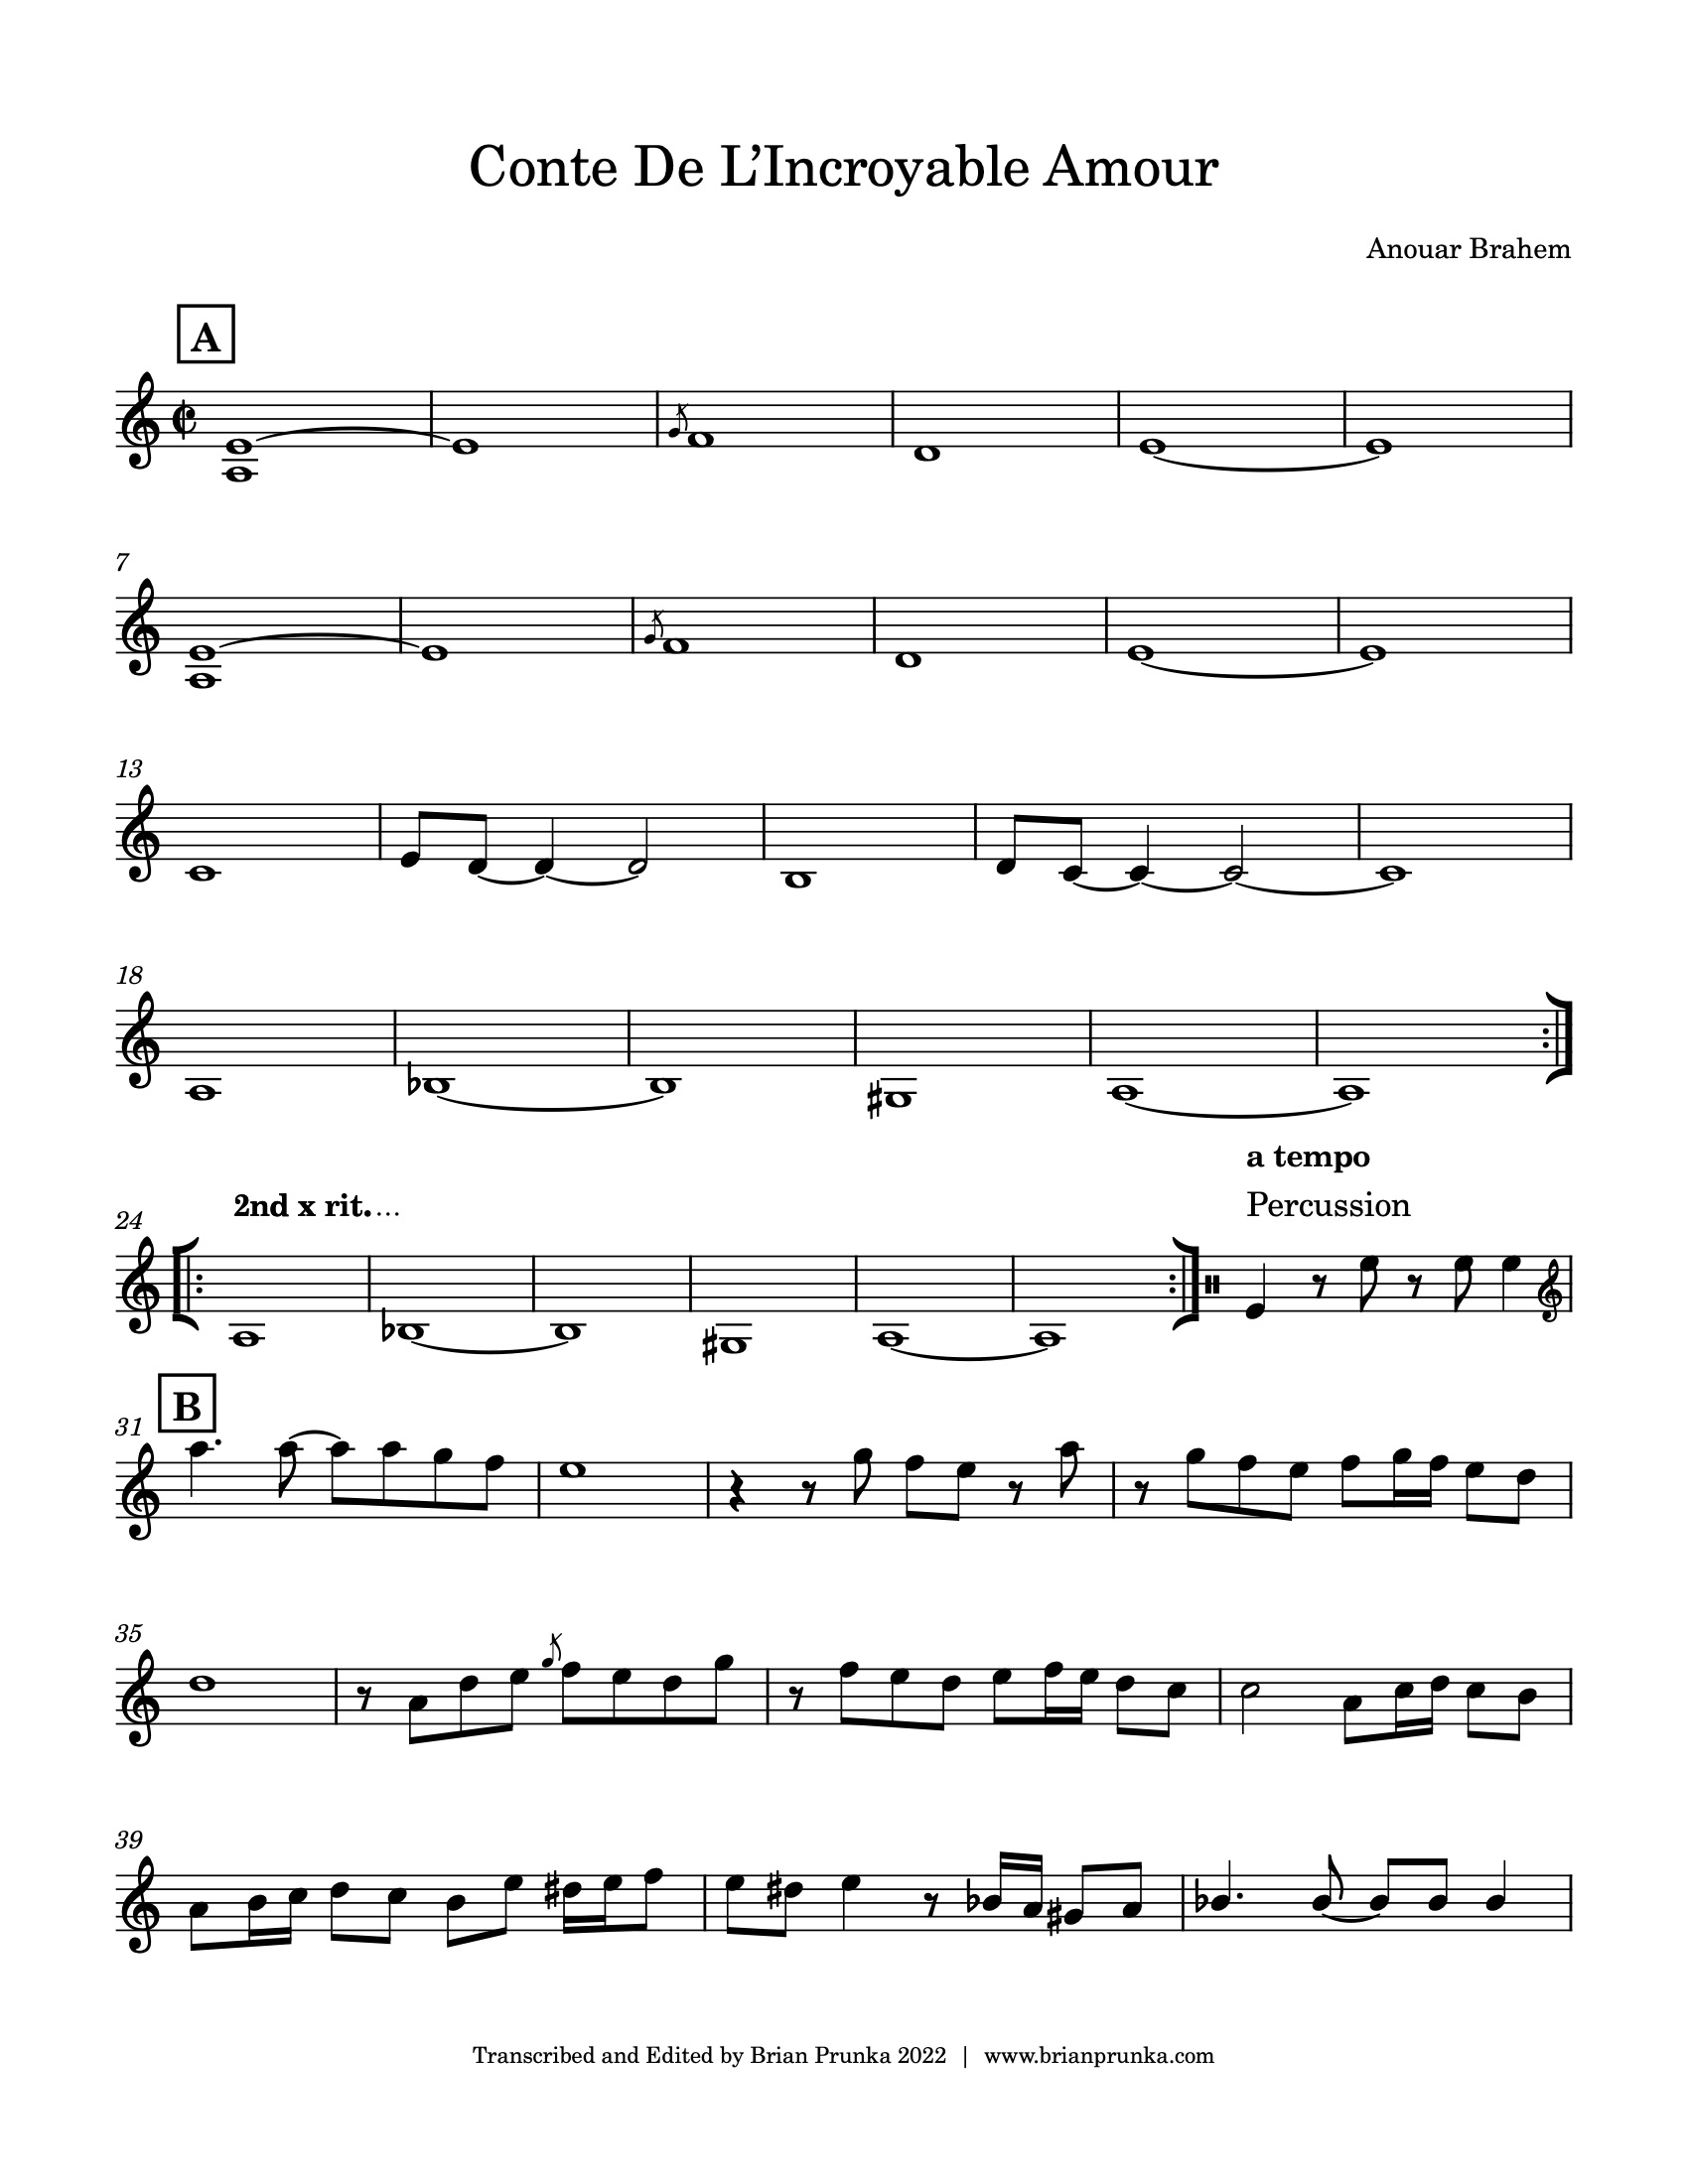 Conte de L'Incroyable Amour Sheet Music - Anouar Brahem (page 1)